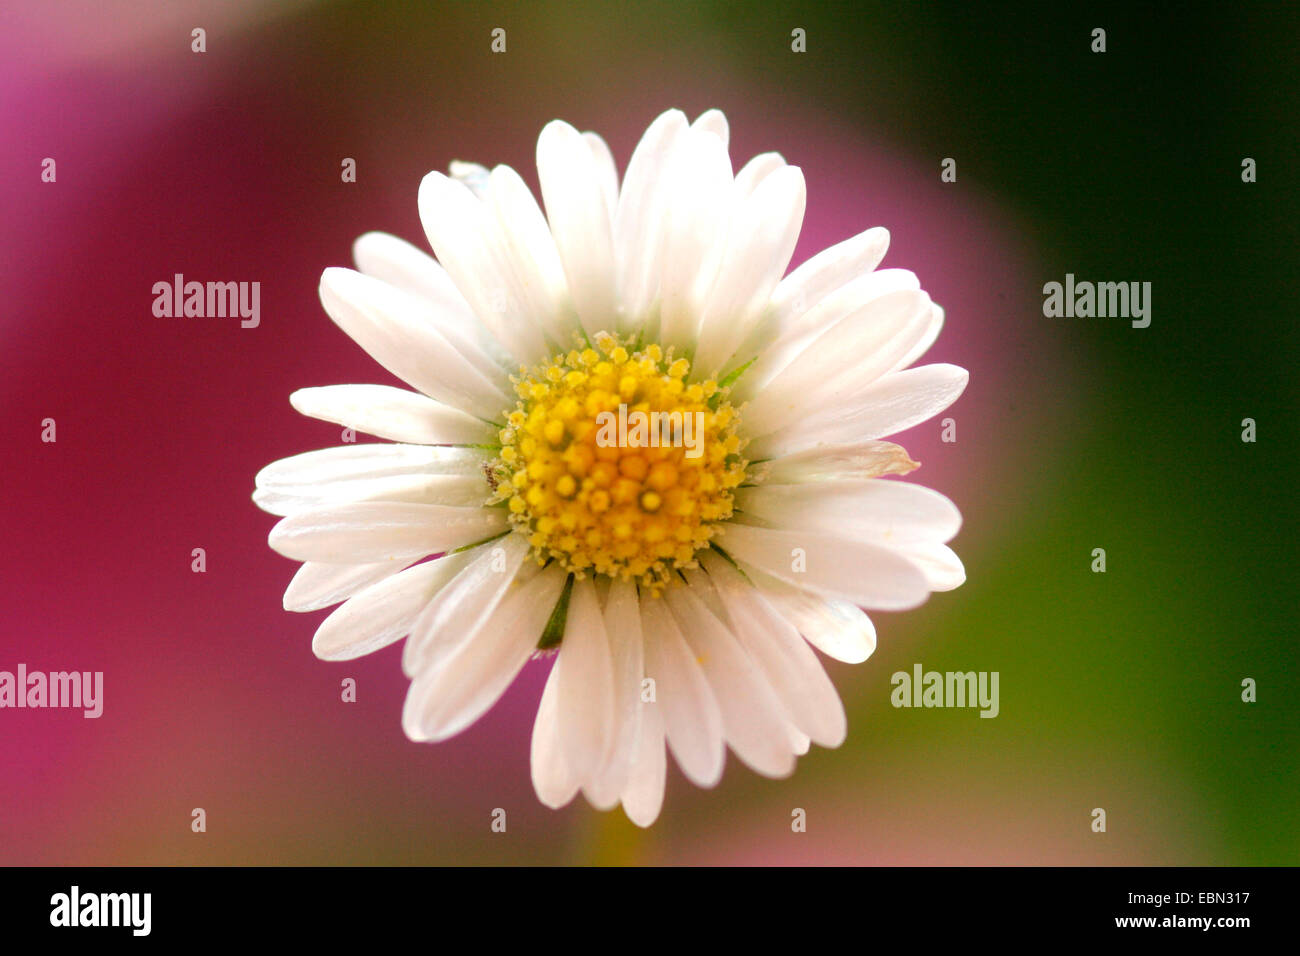 common daisy, lawn daisy, English daisy (Bellis perennis), inflorescence, Germany Stock Photo